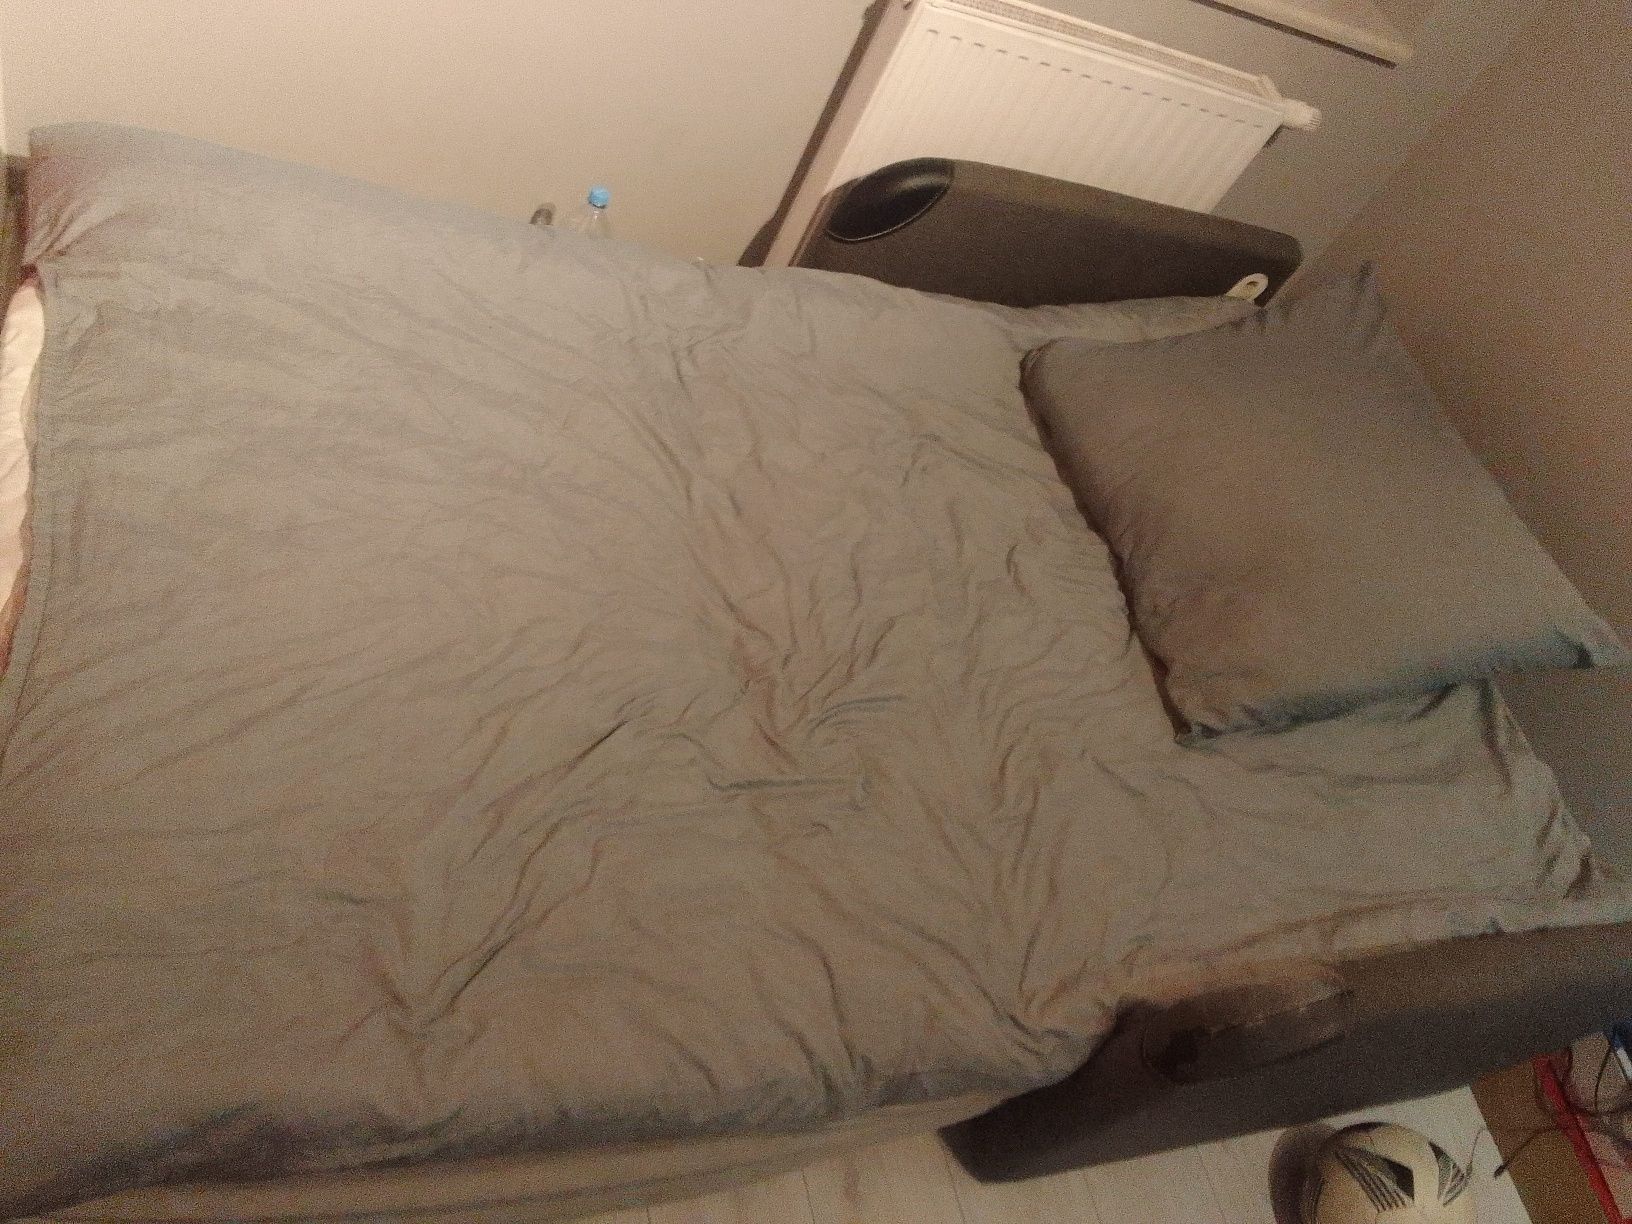 Łóżko,Fotel rozkładany,2 dwuosobowy